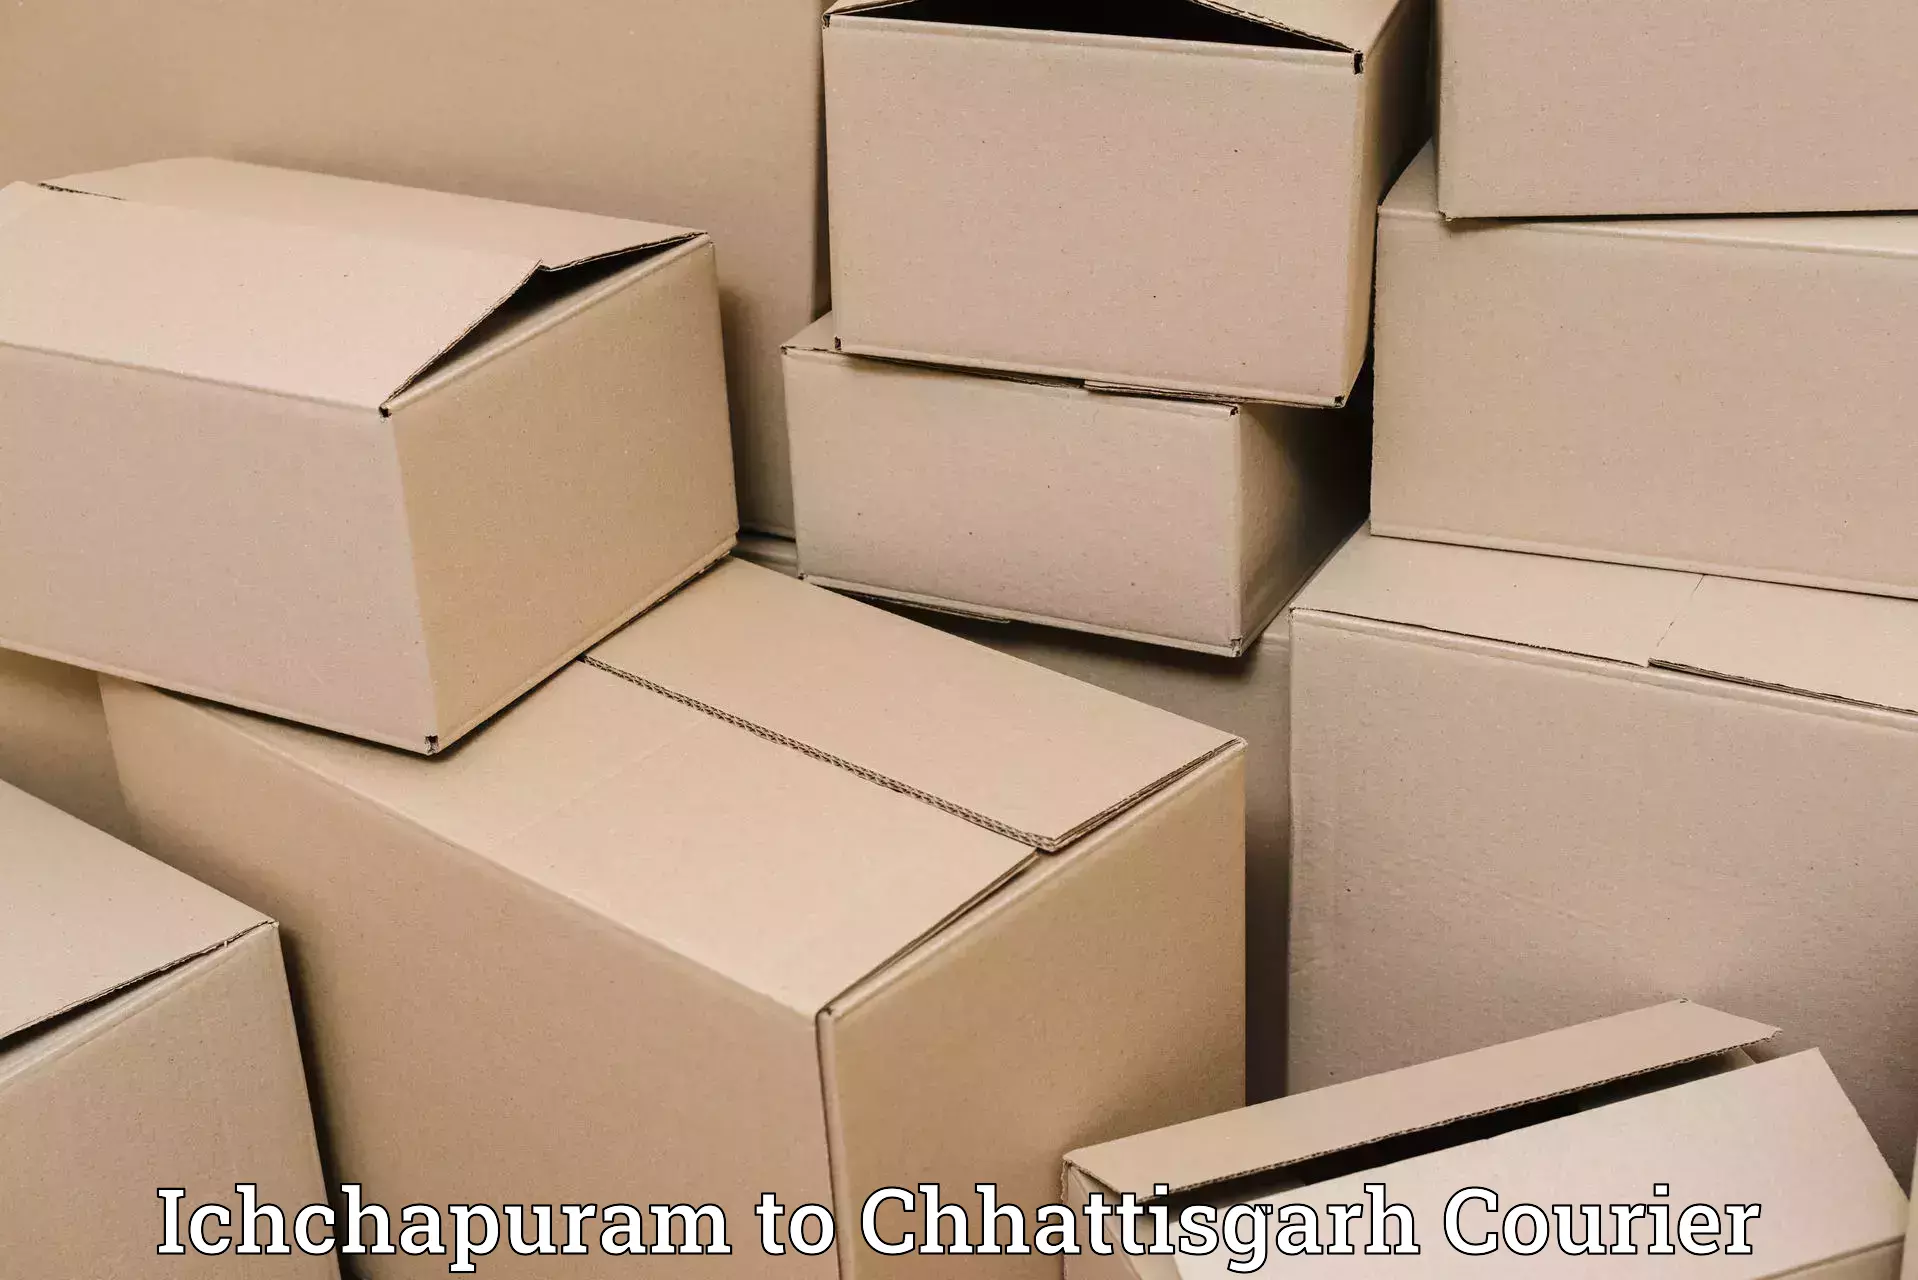 Professional courier handling Ichchapuram to Chhattisgarh